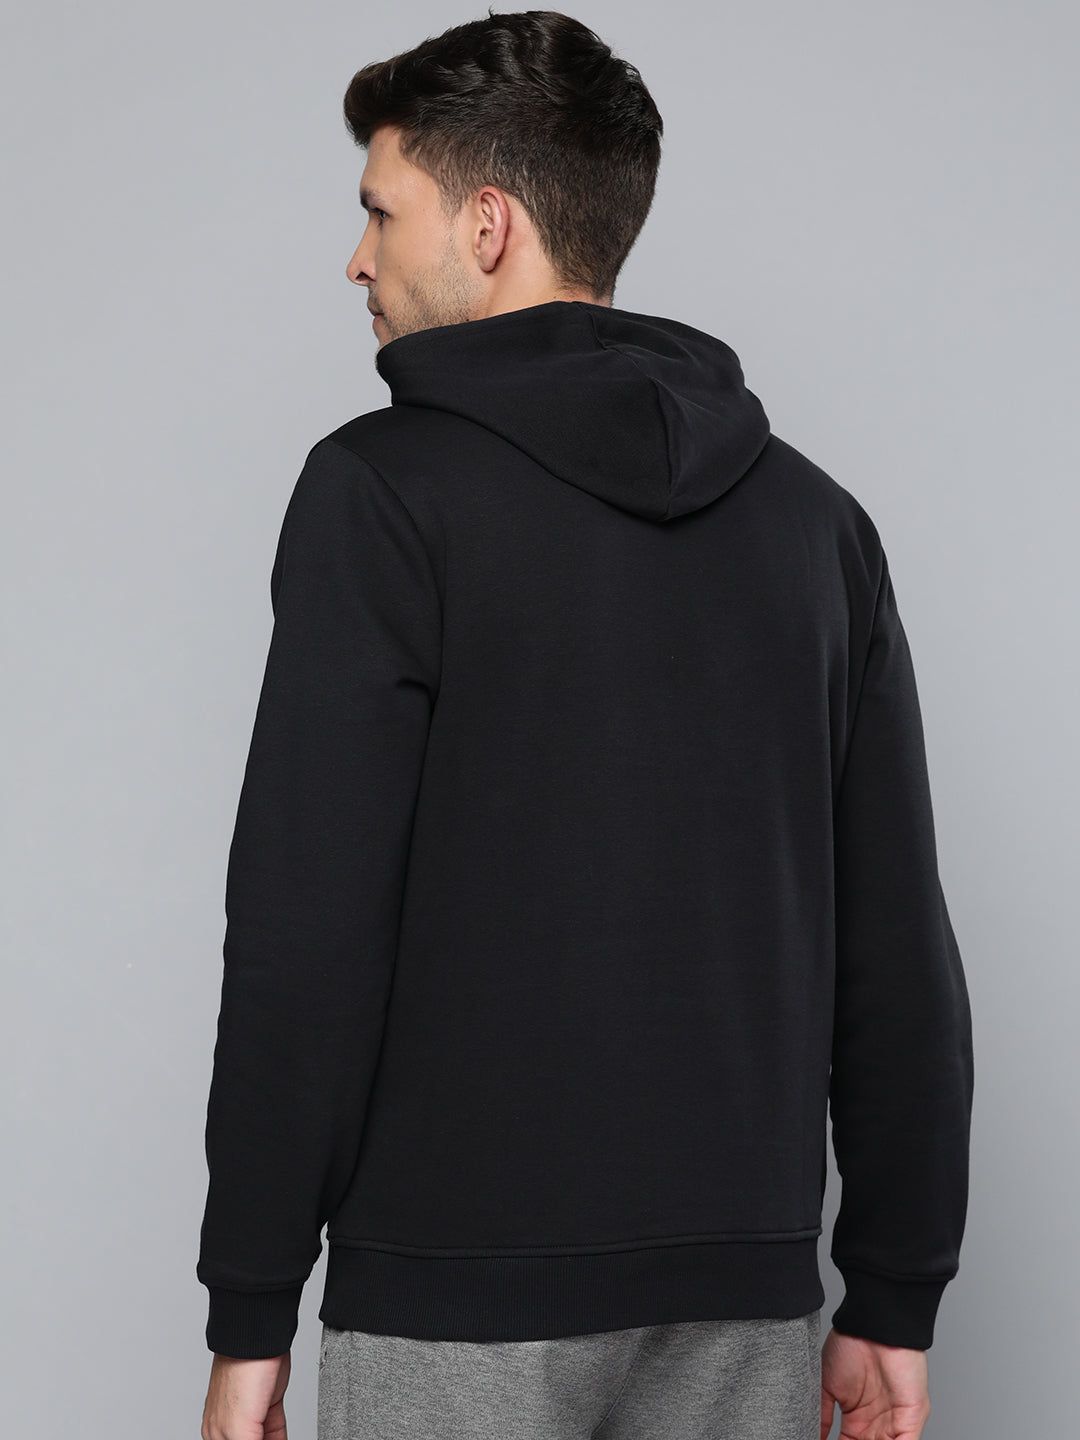 Alcis Men Black Printed Hooded Sweatshirt